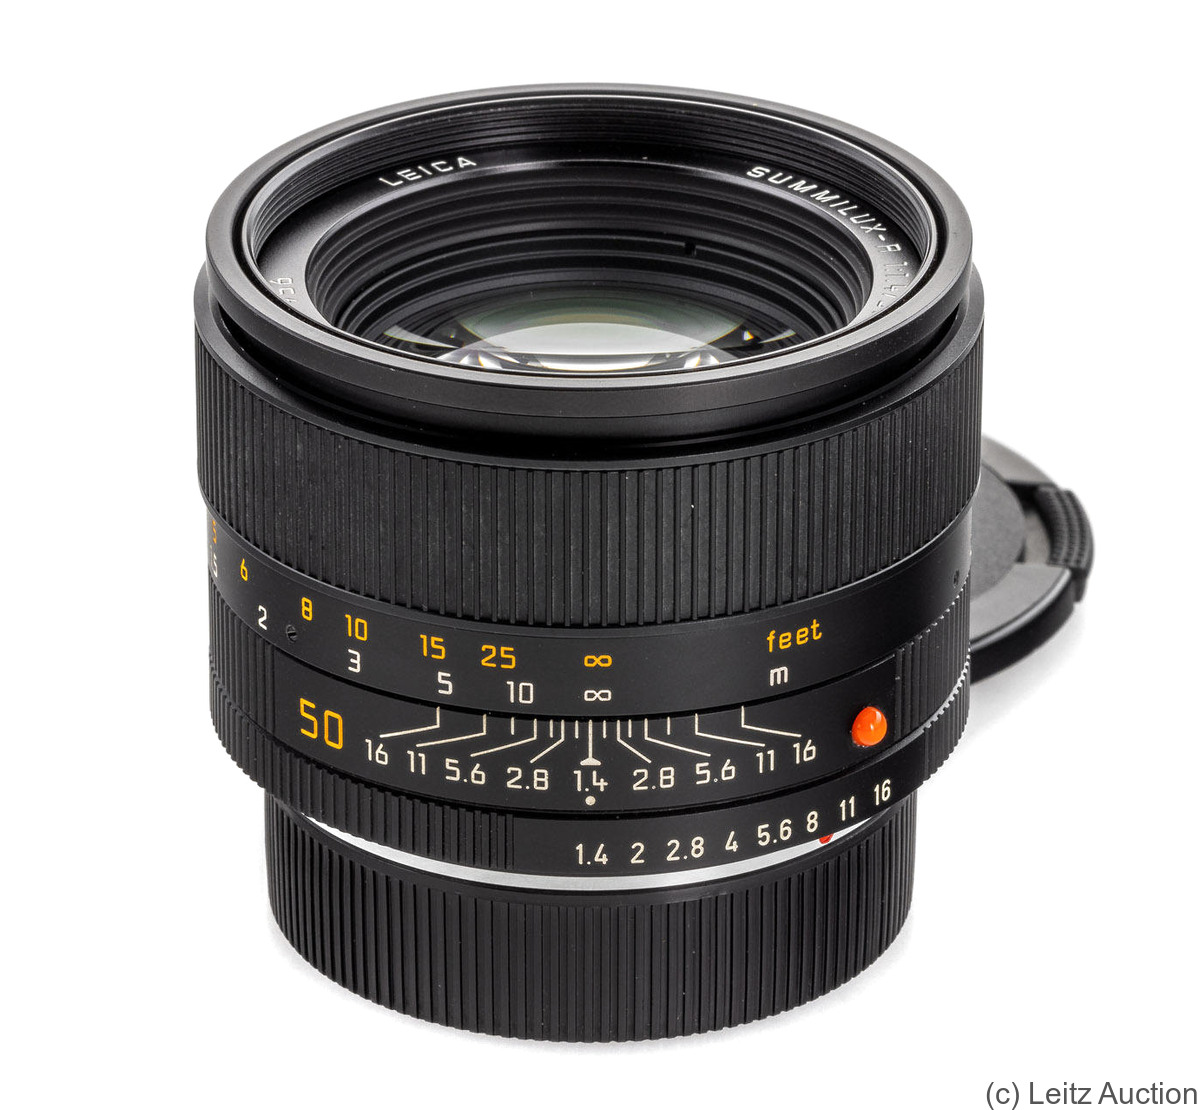 Leitz: 50mm (5cm) f1.4 Summilux-R (11344) camera